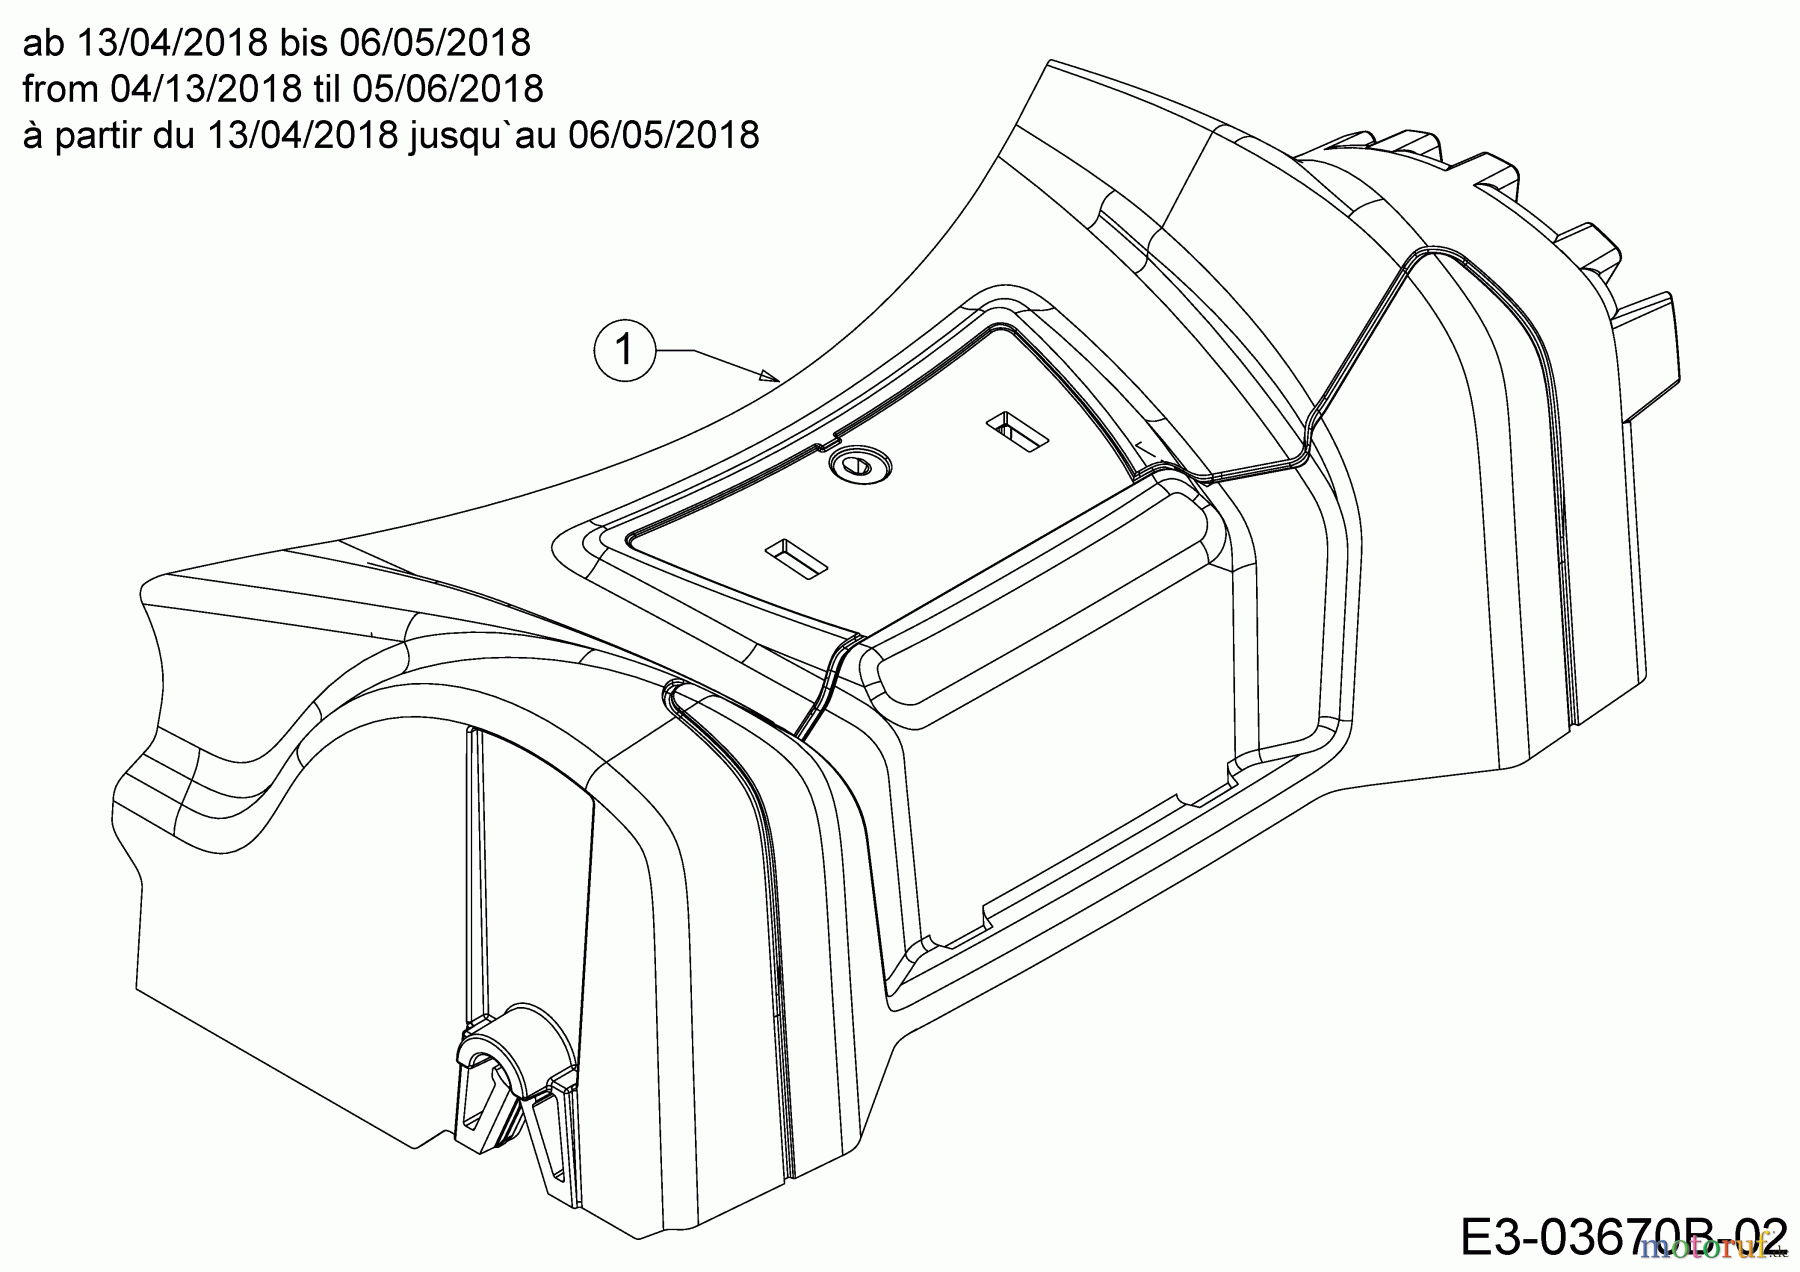  MTD Motormäher mit Antrieb Smart 46 SPB 12B-TA5B600  (2018) Abdeckung Vorderachse ab 13/04/2018 bis 06/05/2018